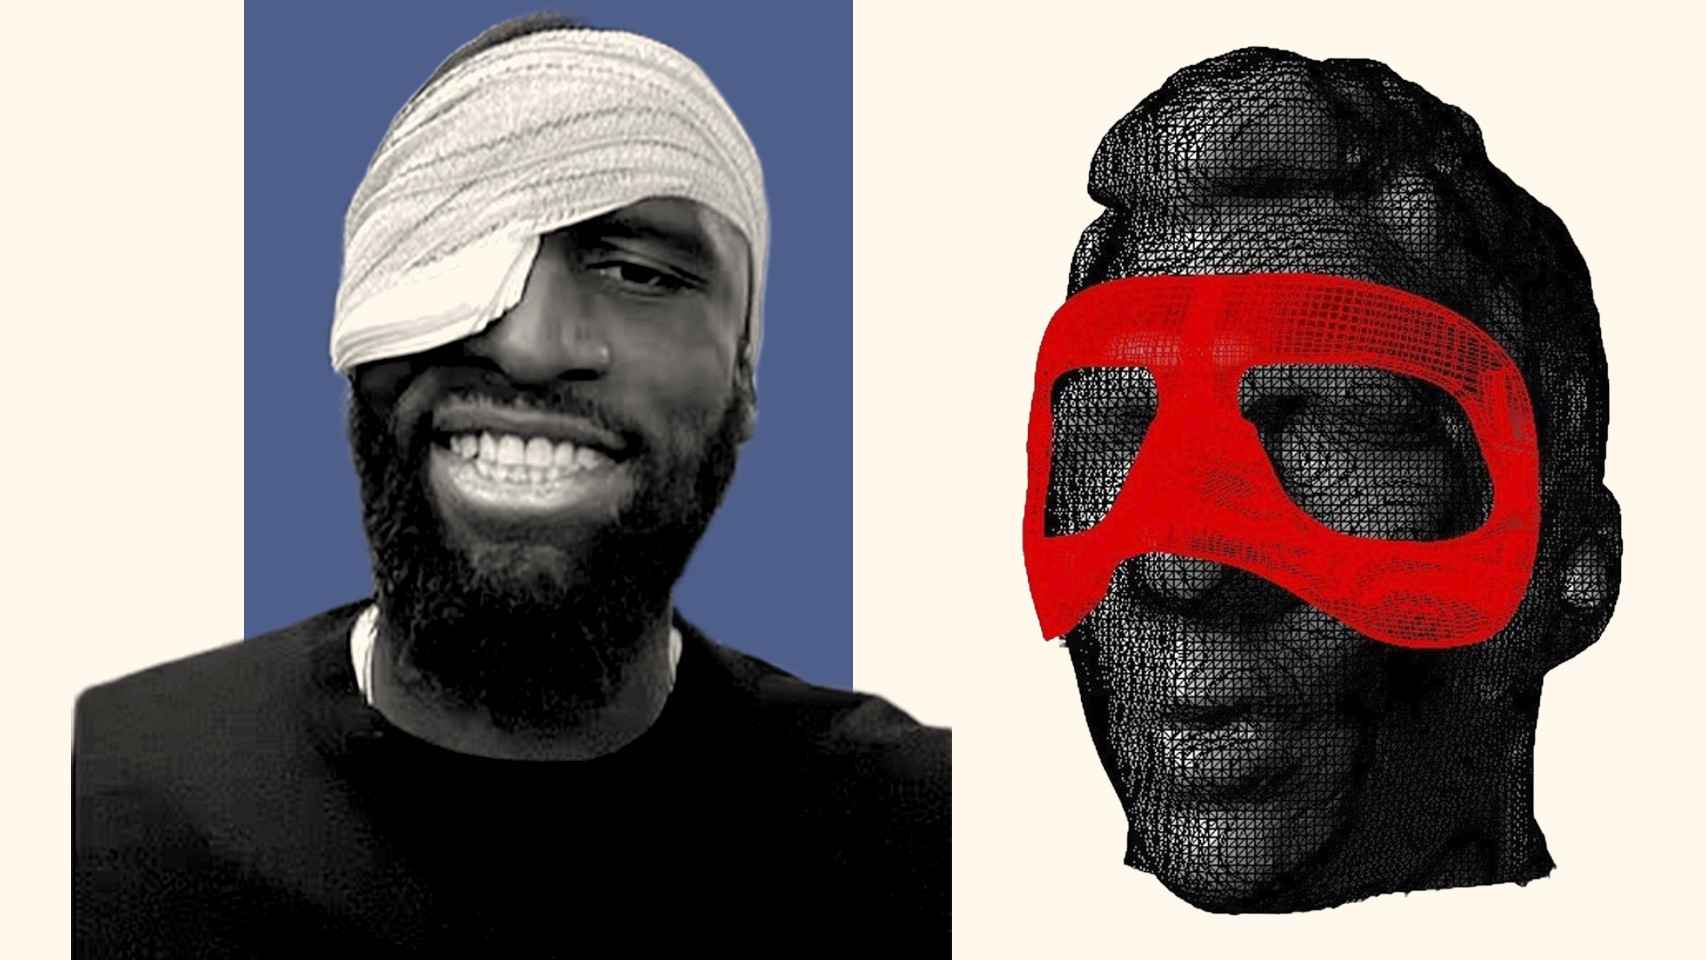 Antonio Rüdiger con el ojo vendado y una recreación 3D de una máscara de protección facial